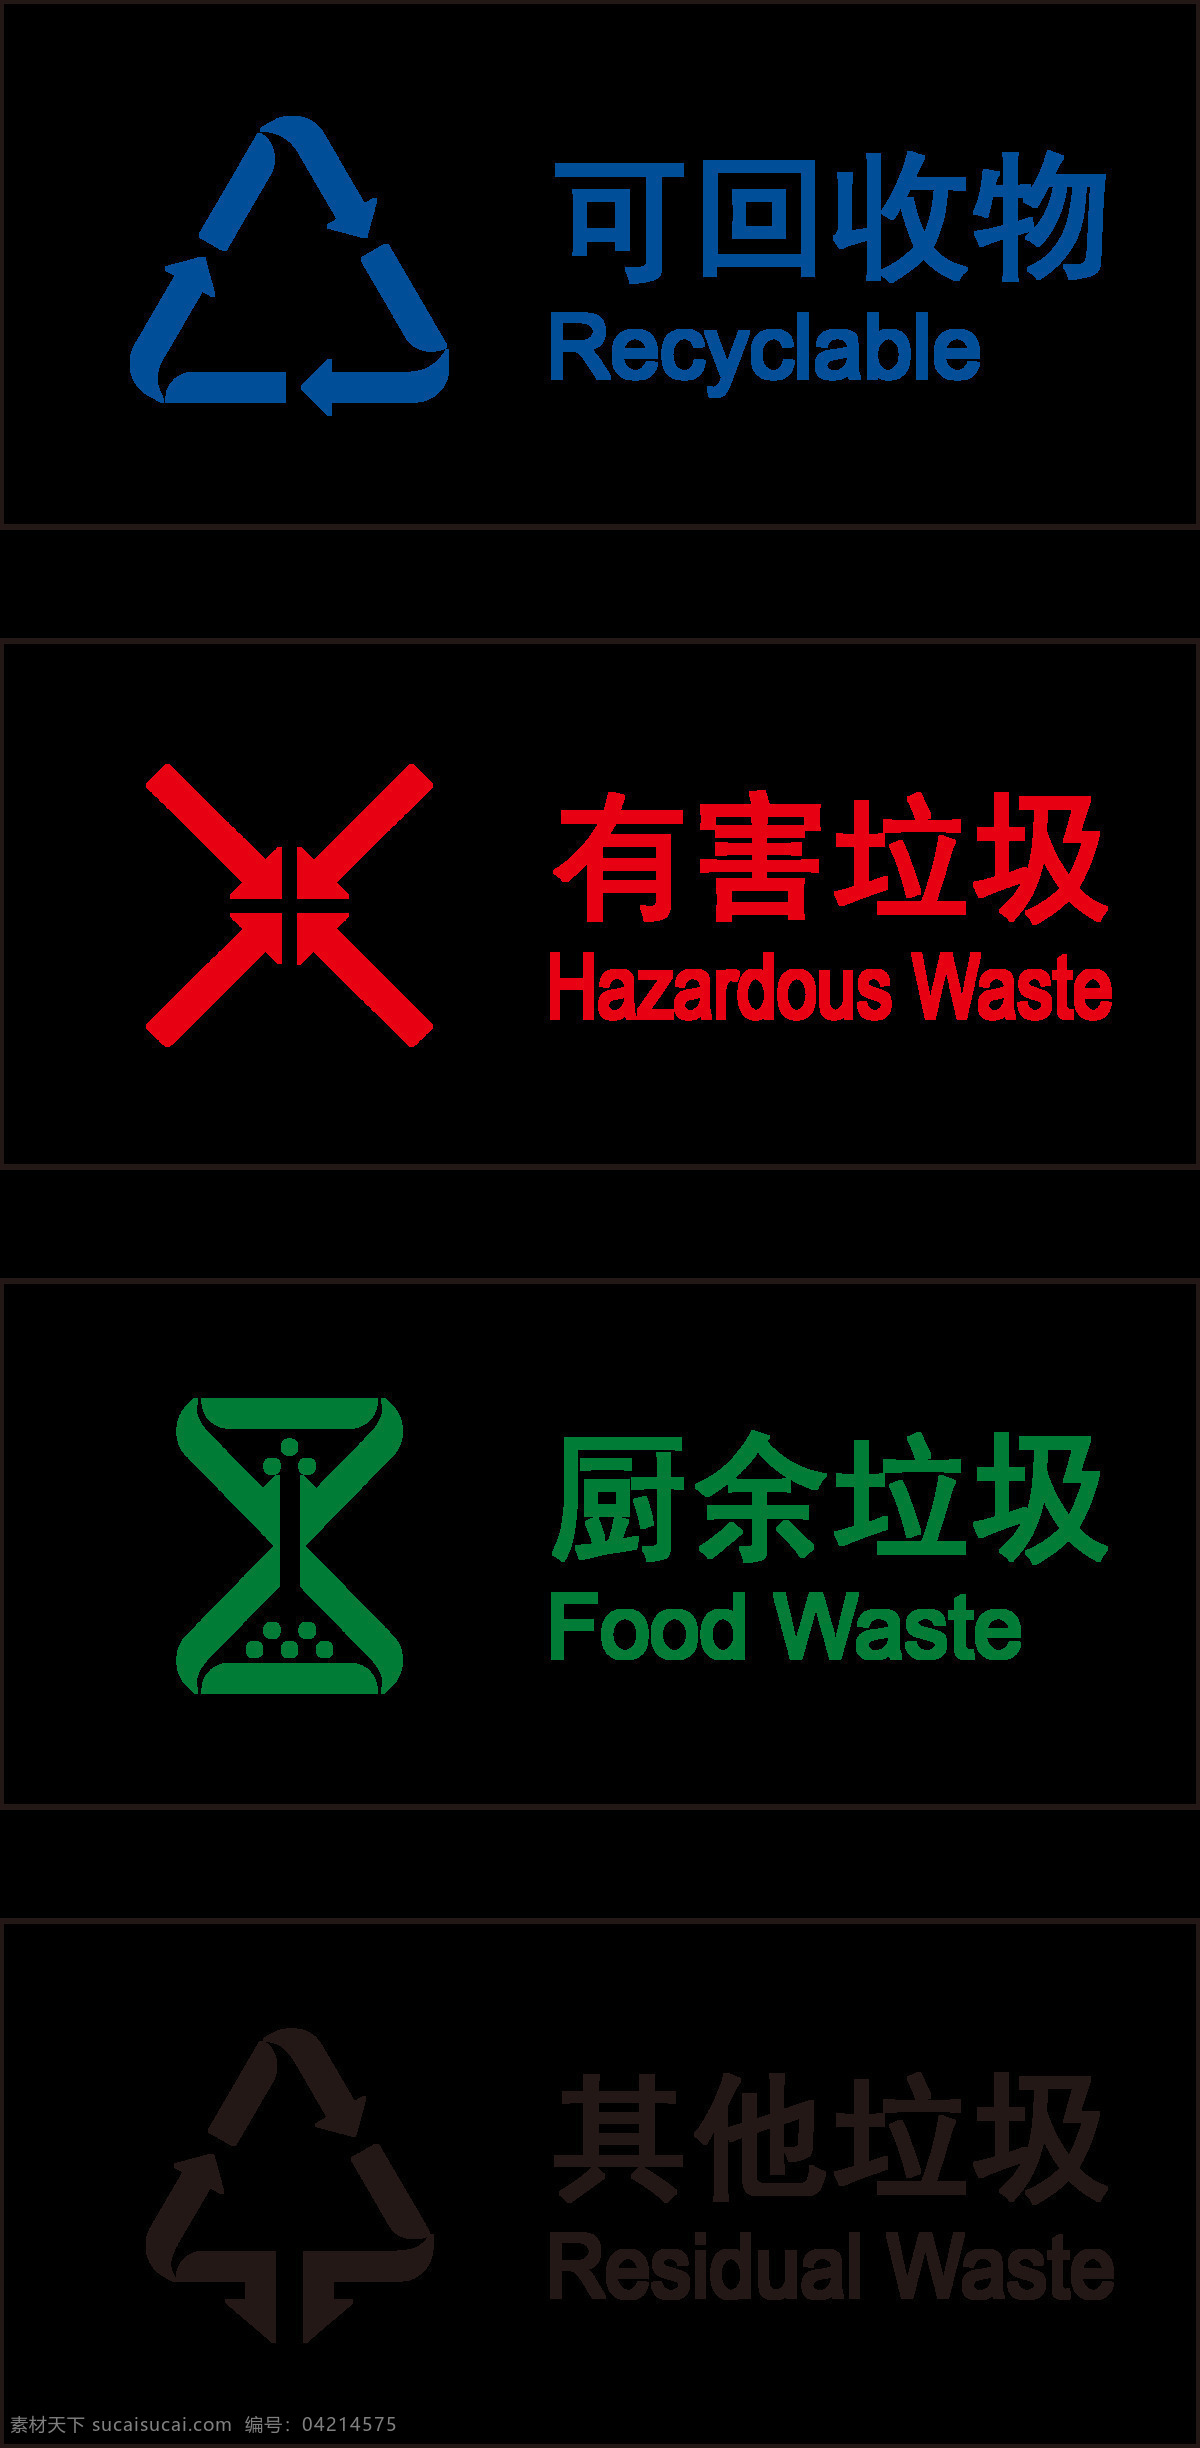 2019 垃圾 分类 透明 底 高清 图标 可回收垃圾 有害垃圾 厨余垃圾 其他垃圾 高清logo 最新垃圾分类 垃圾分类 标志图标 公共标识标志